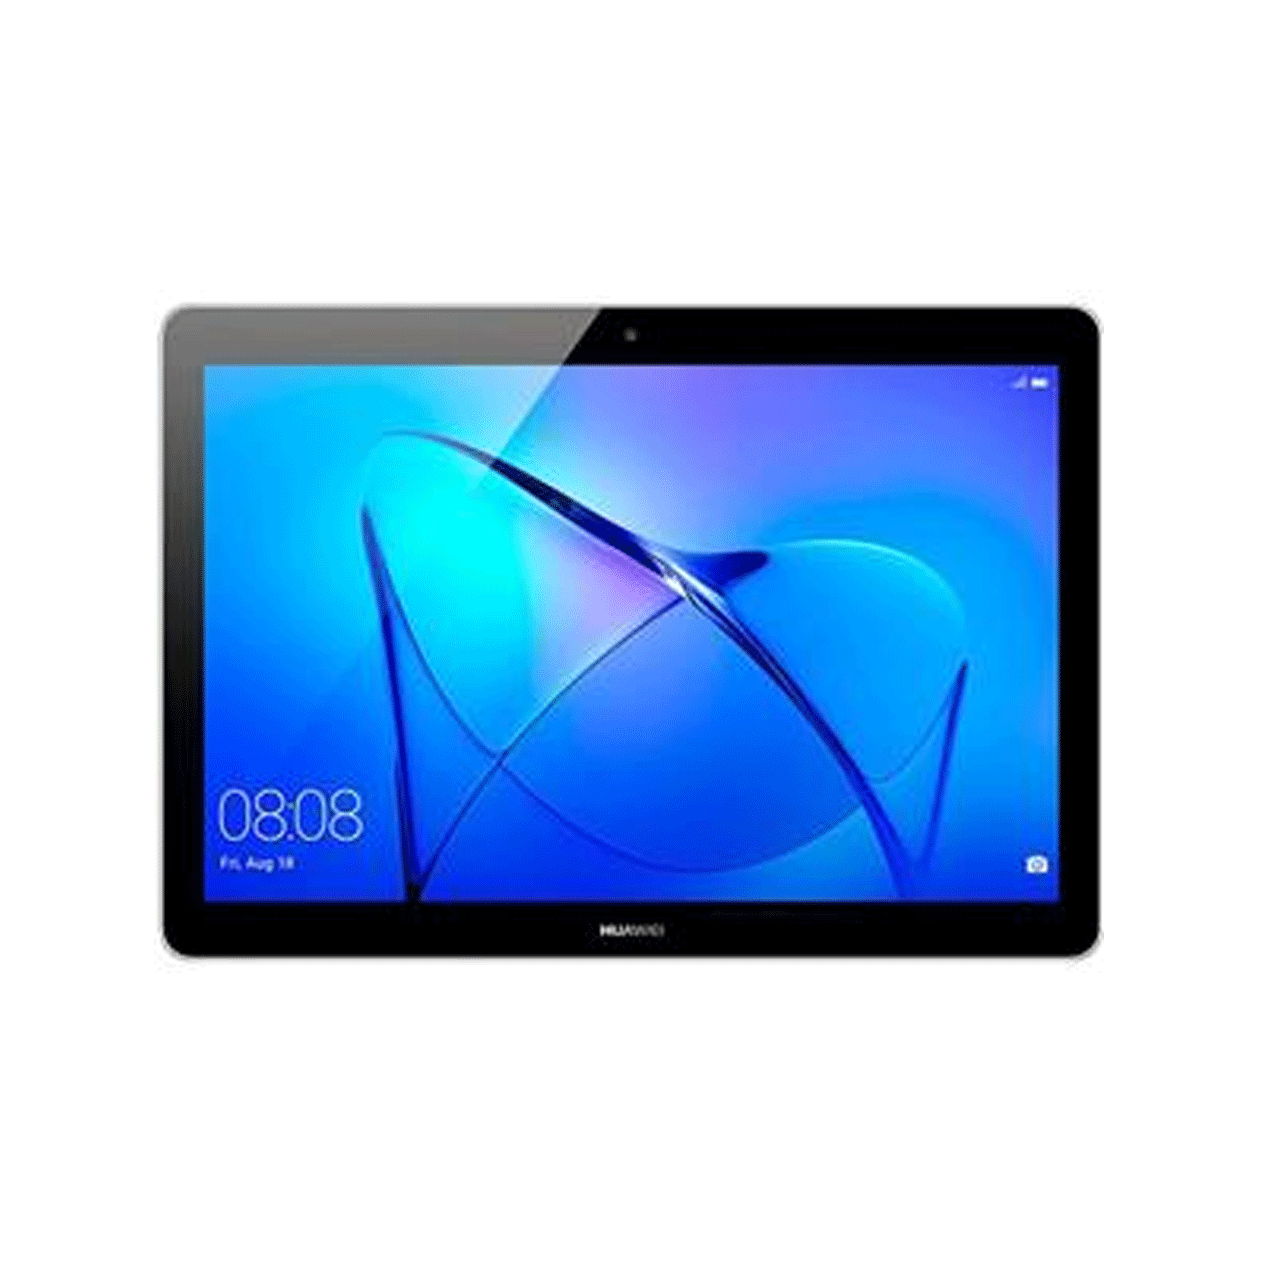 Huawei-Mediapad-T3-10-Tablet---16GB